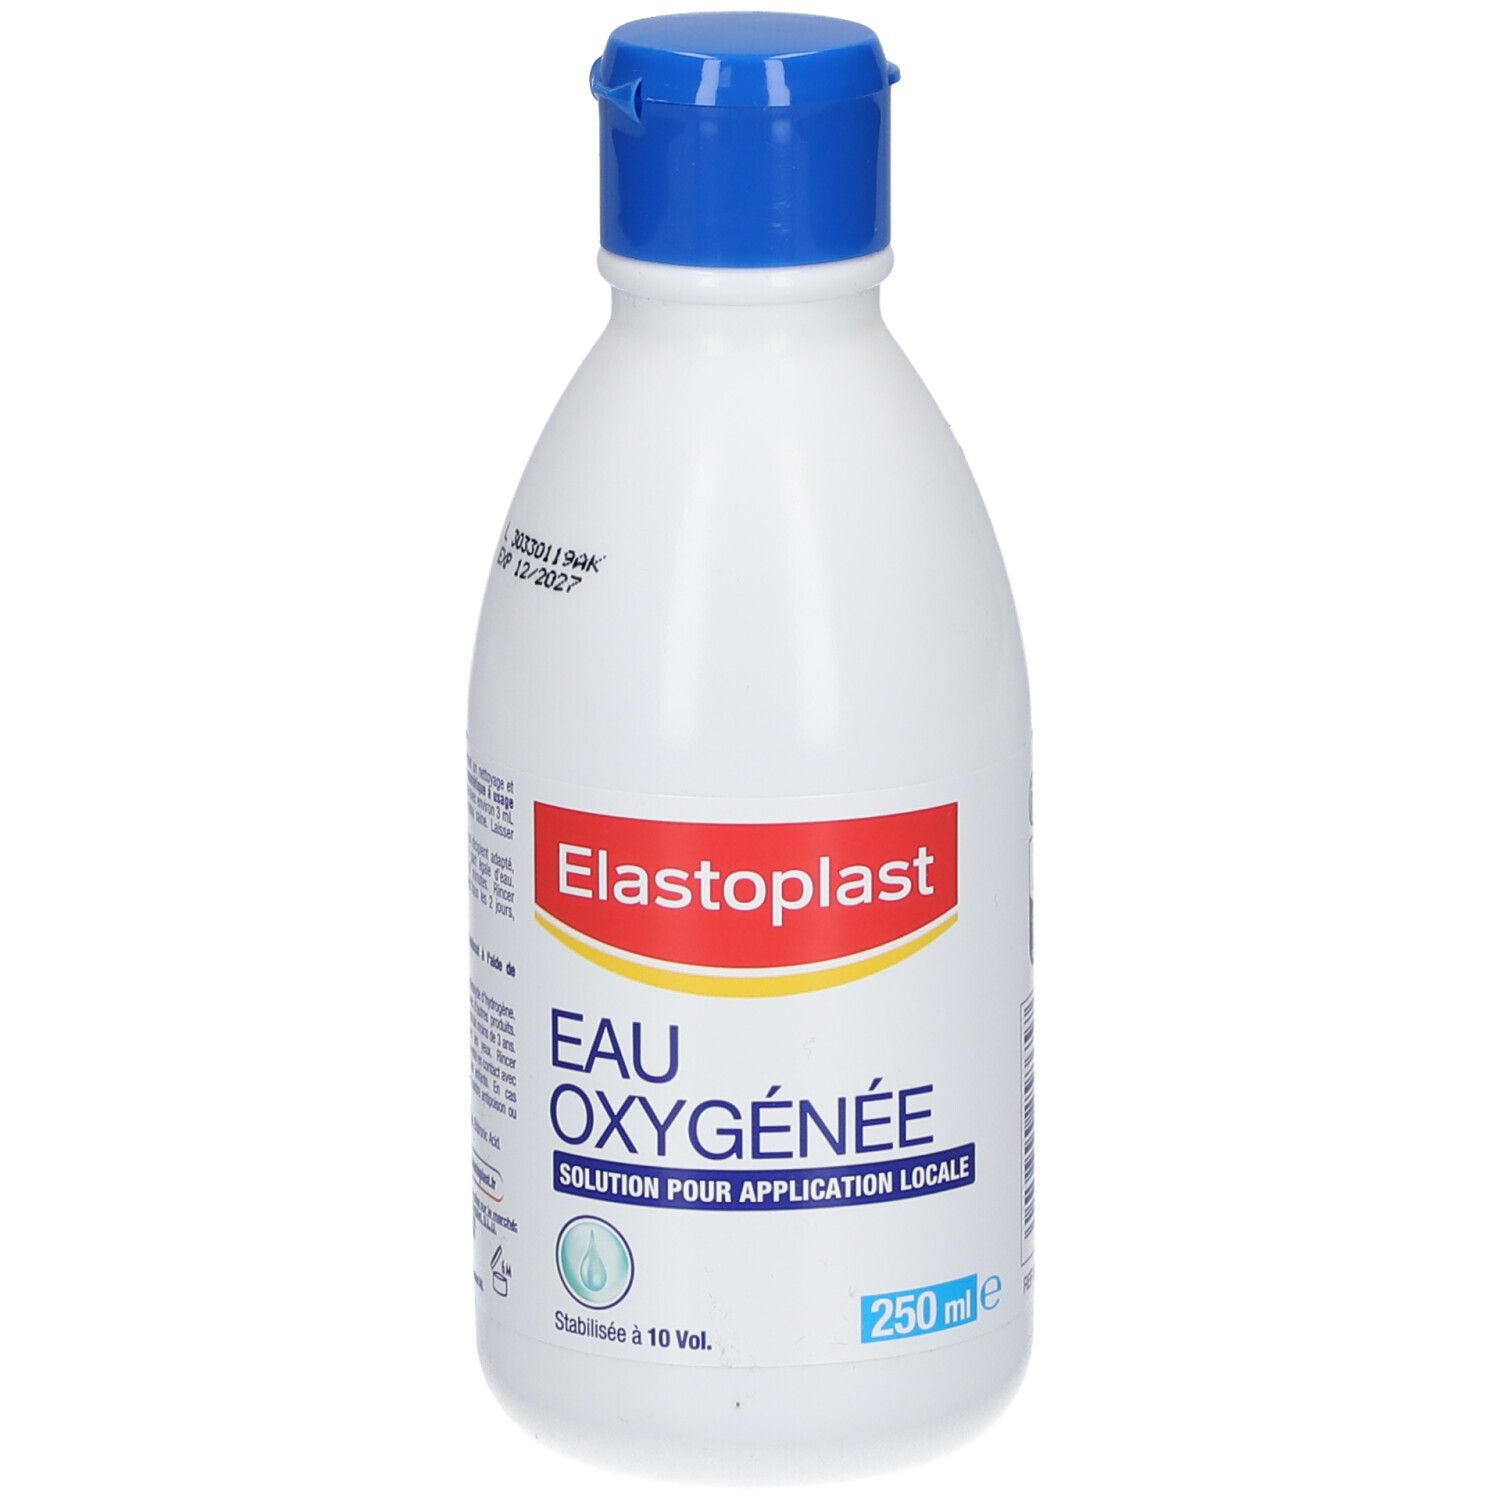 Elastoplast Eau Oxygénée - Stabilisée à 10 Vol